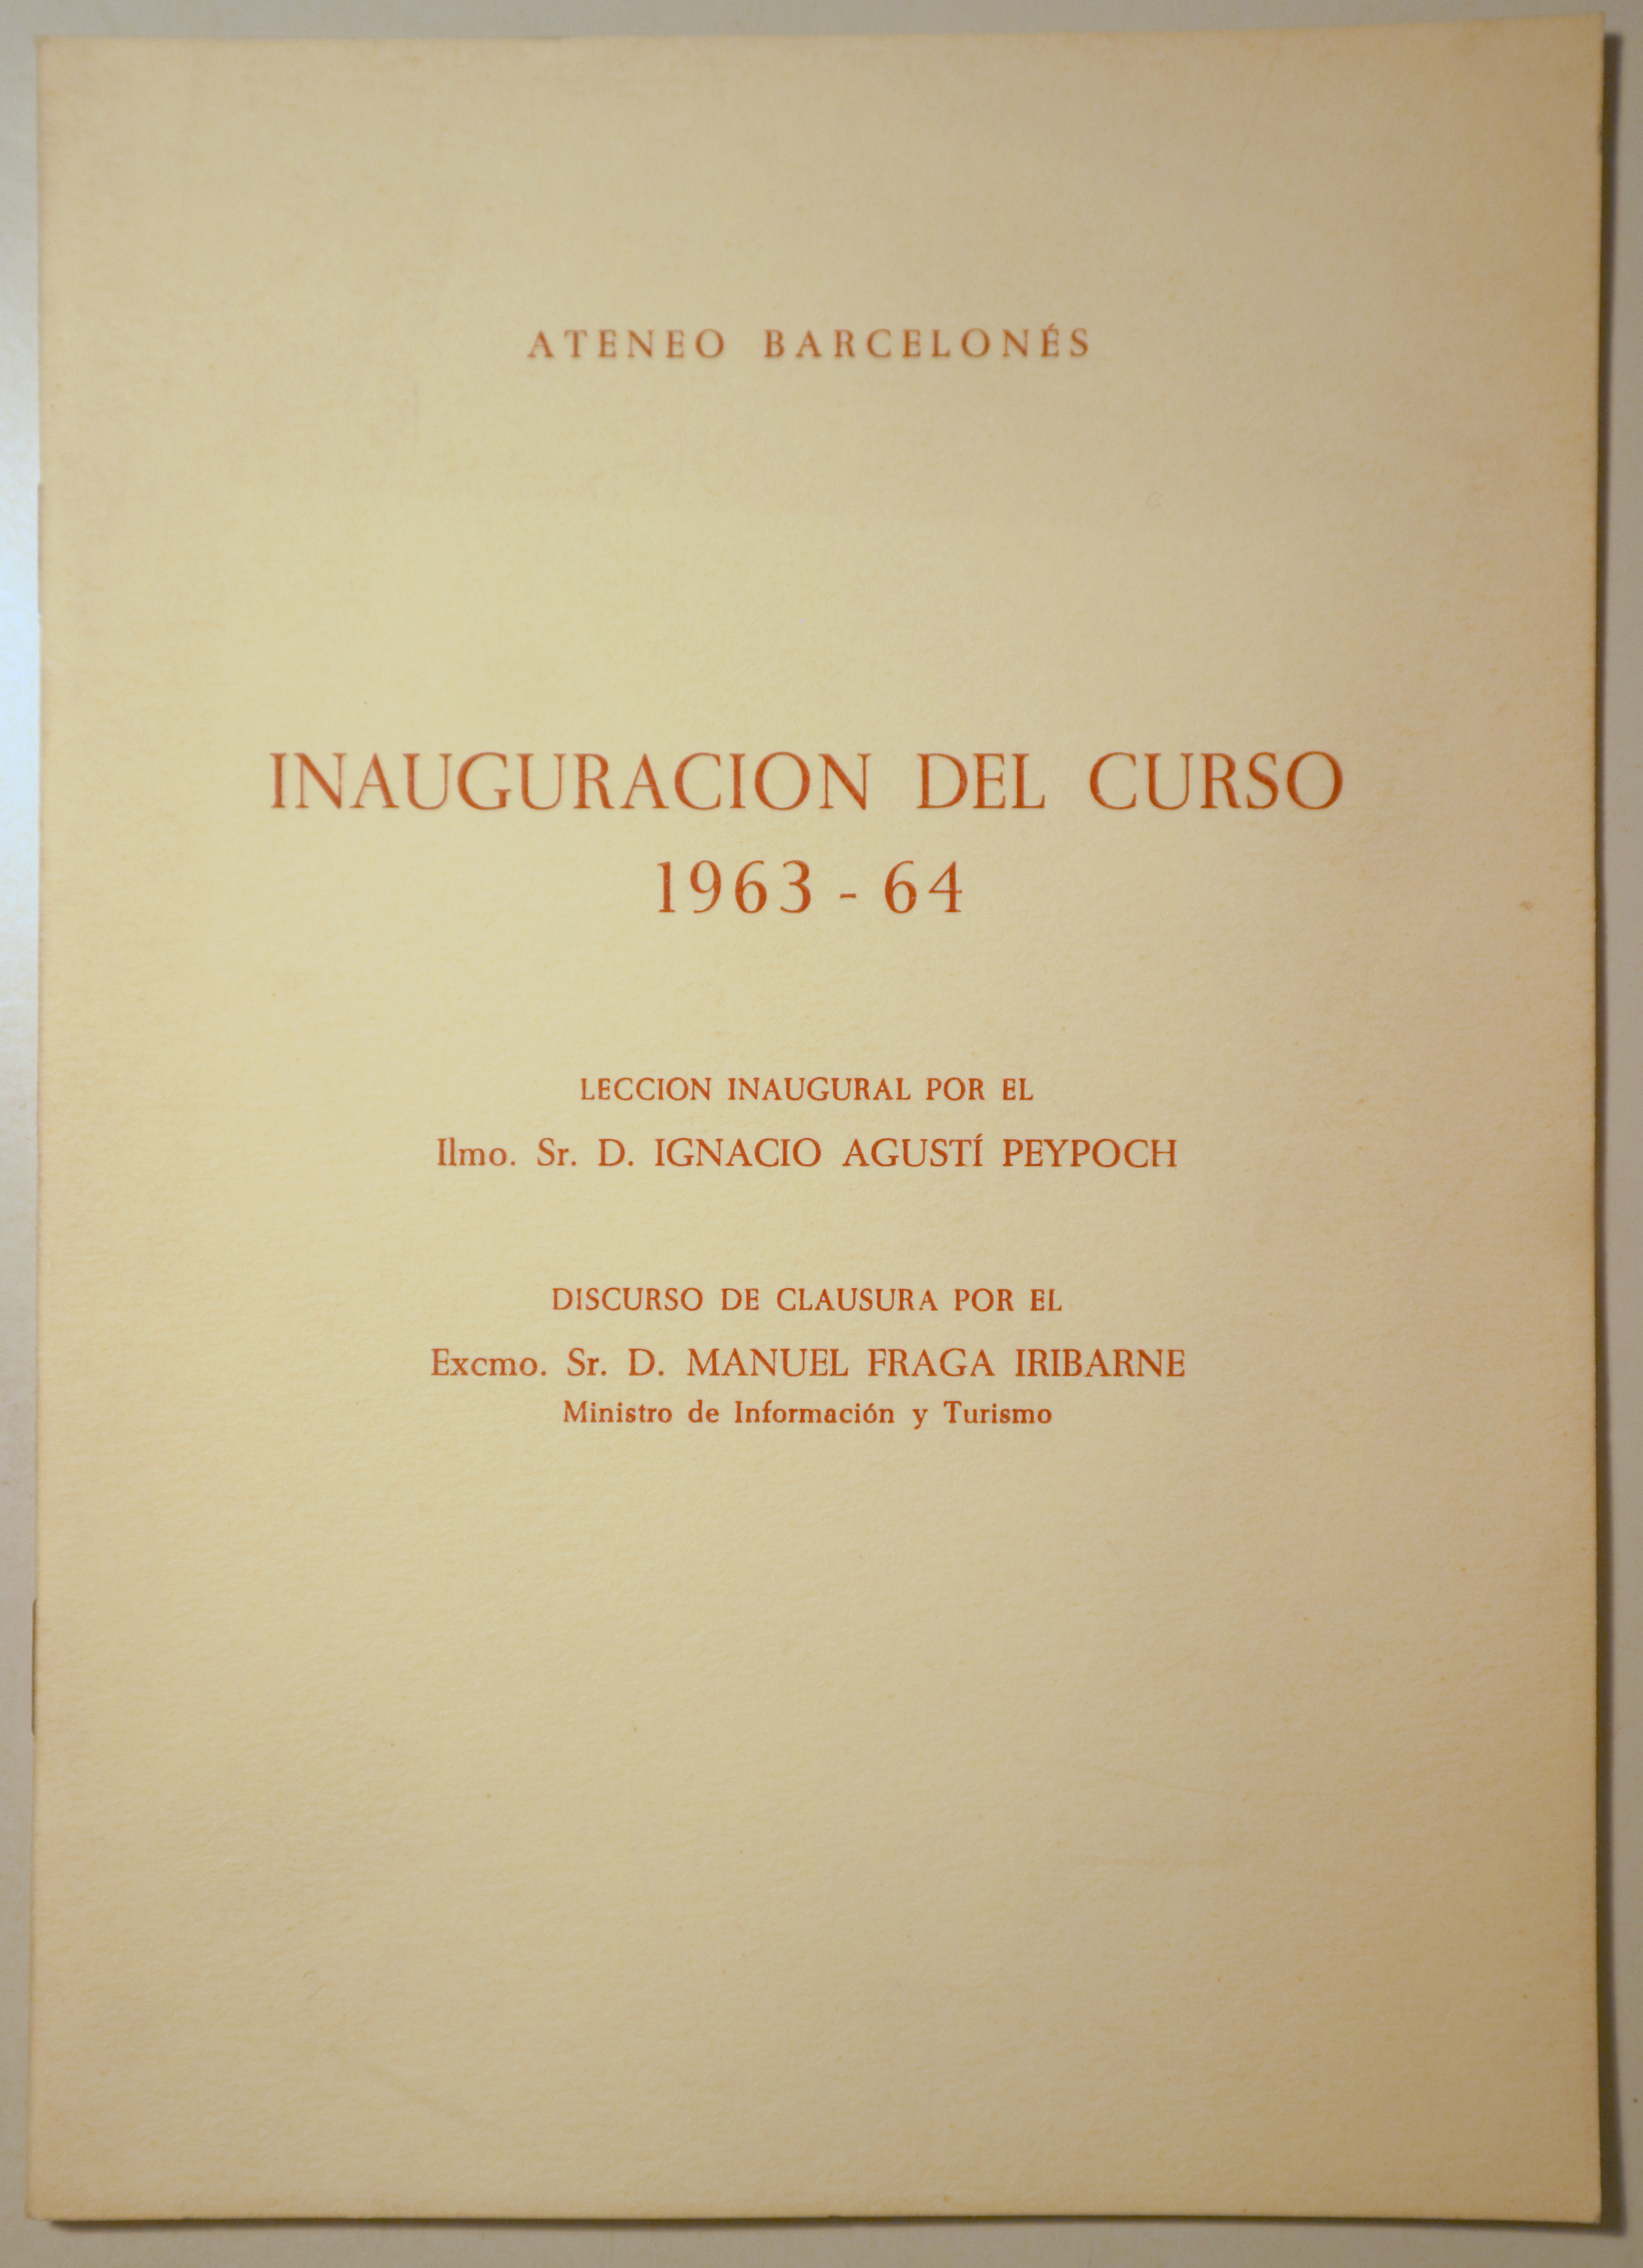 ATENEO BARCELONÉS. INAUGURACIÓN DEL CURSO 1963-64 - Barcelona 1964